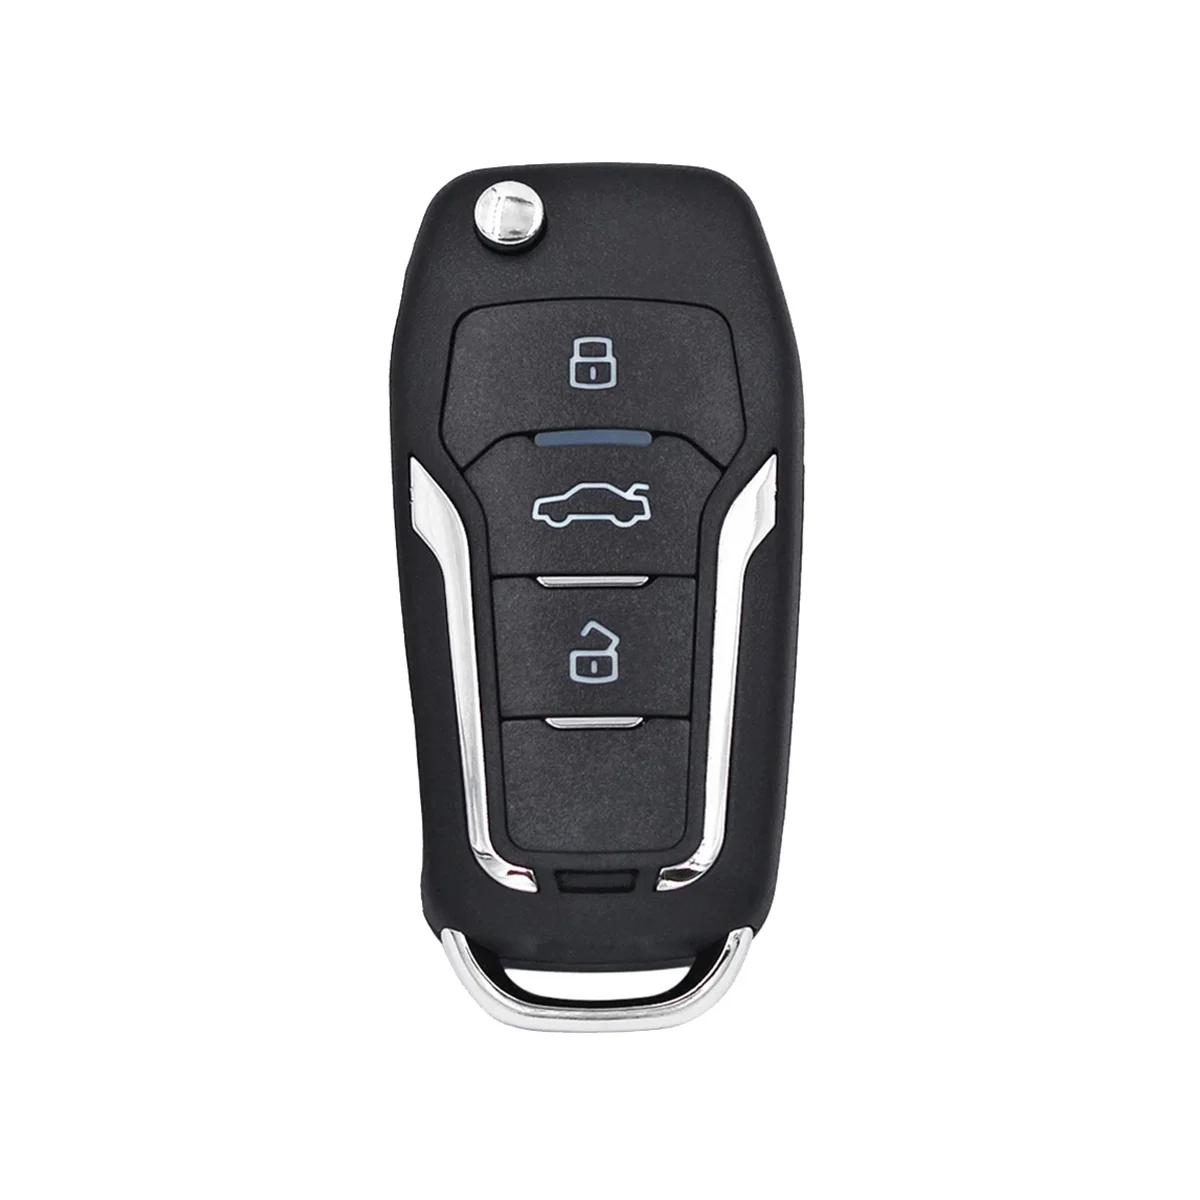 

KEYDIY NB12-3 Универсальный Автомобильный пульт дистанционного управления с 3 кнопками для KD900/-X2 MINI/ -MAX для стиля